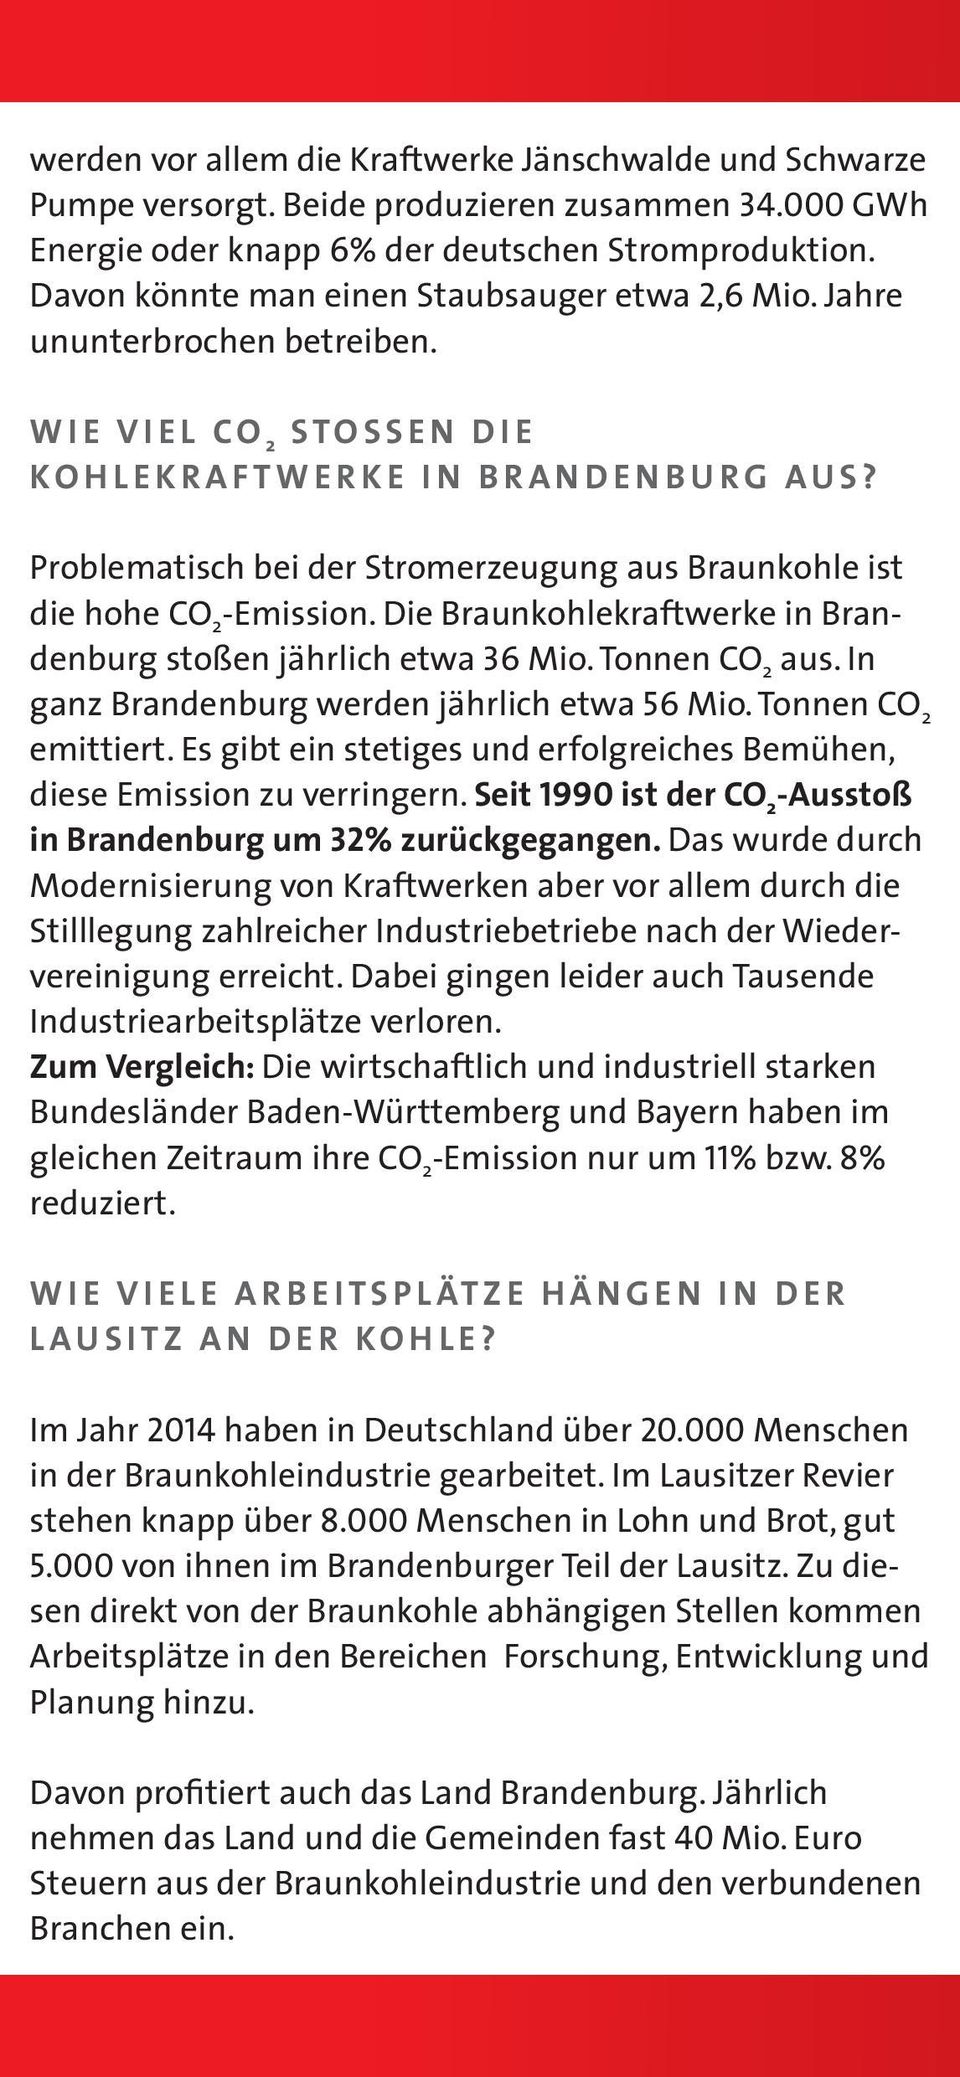 Problematisch bei der Stromerzeugung aus Braunkohle ist die hohe CO 2 -Emission. Die Braunkohlekraftwerke in Brandenburg stoßen jährlich etwa 36 Mio. Tonnen CO 2 aus.